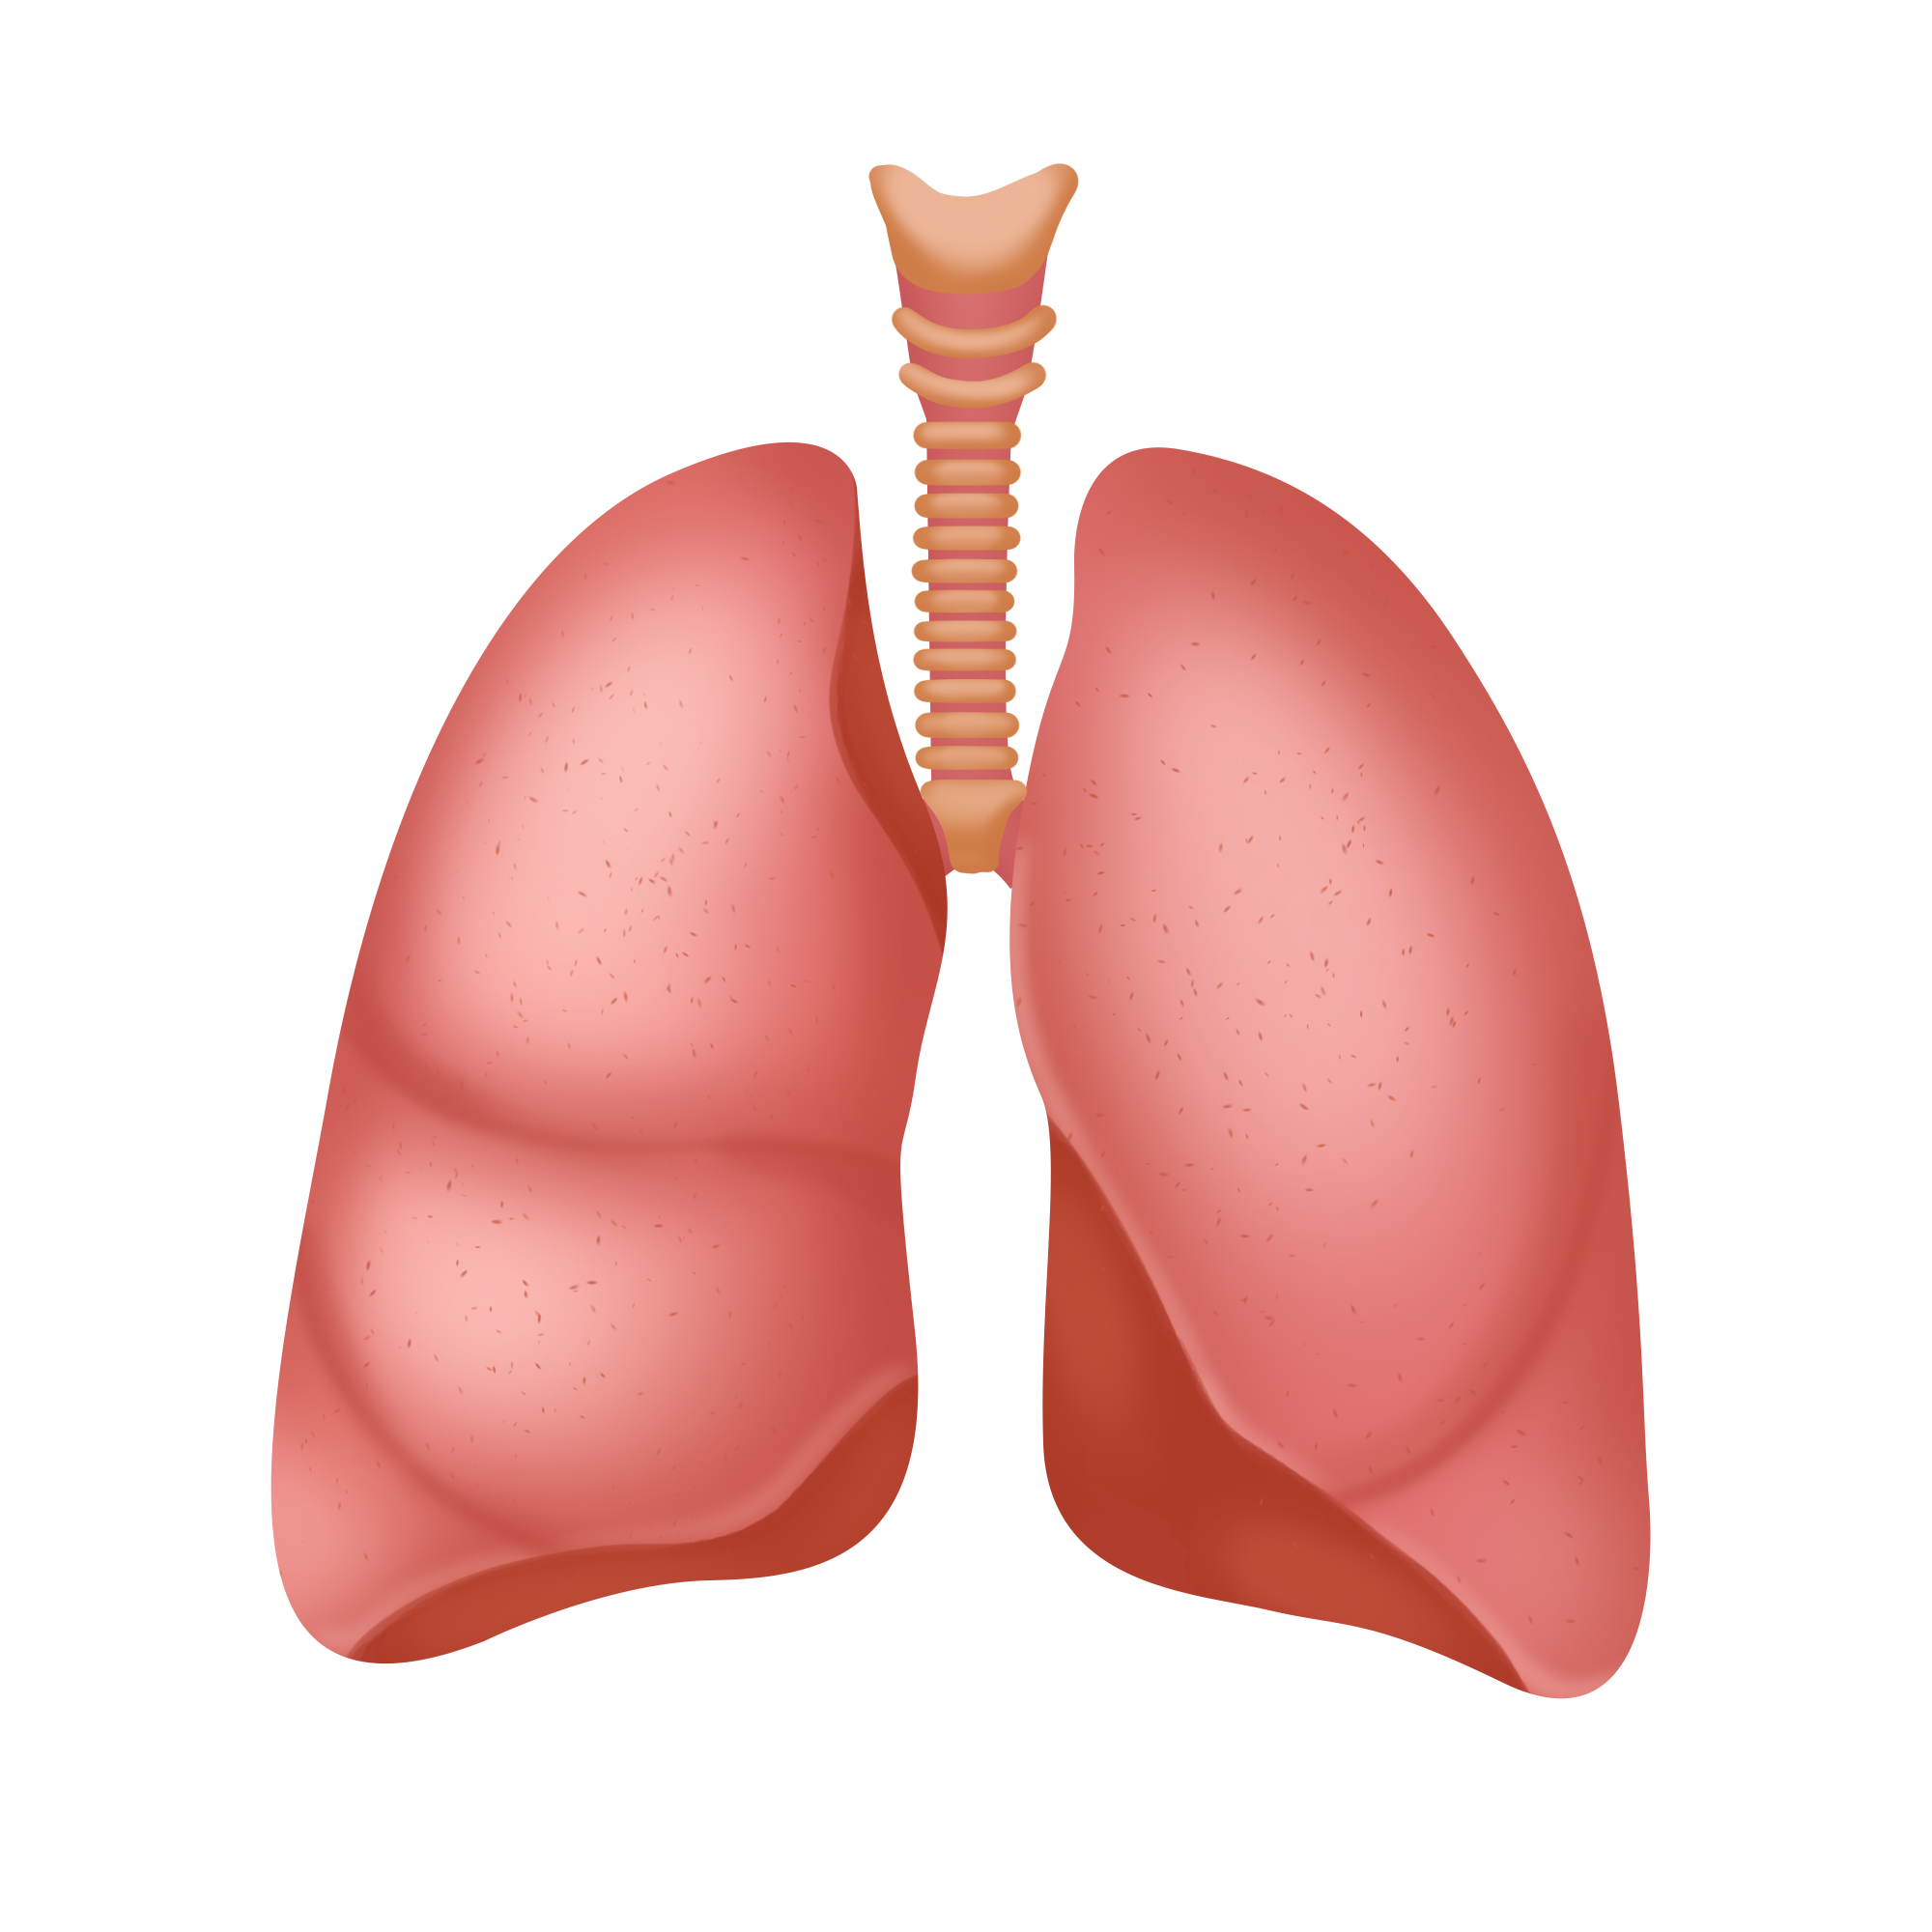 肺通气功能测试产品注册技术审查指导原则